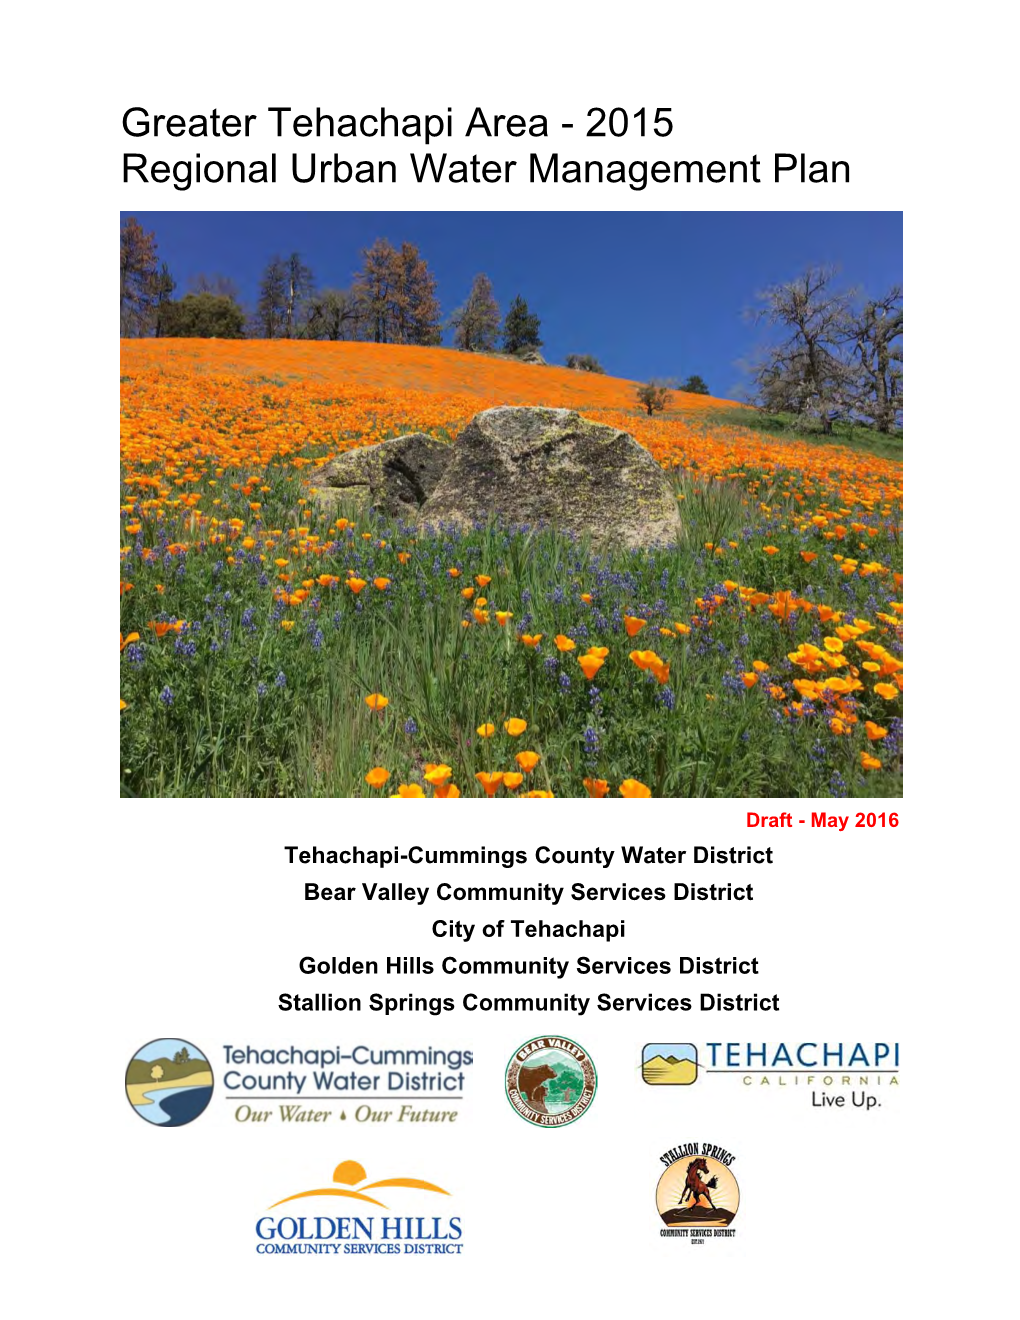 2015 Regional Urban Water Management Plan